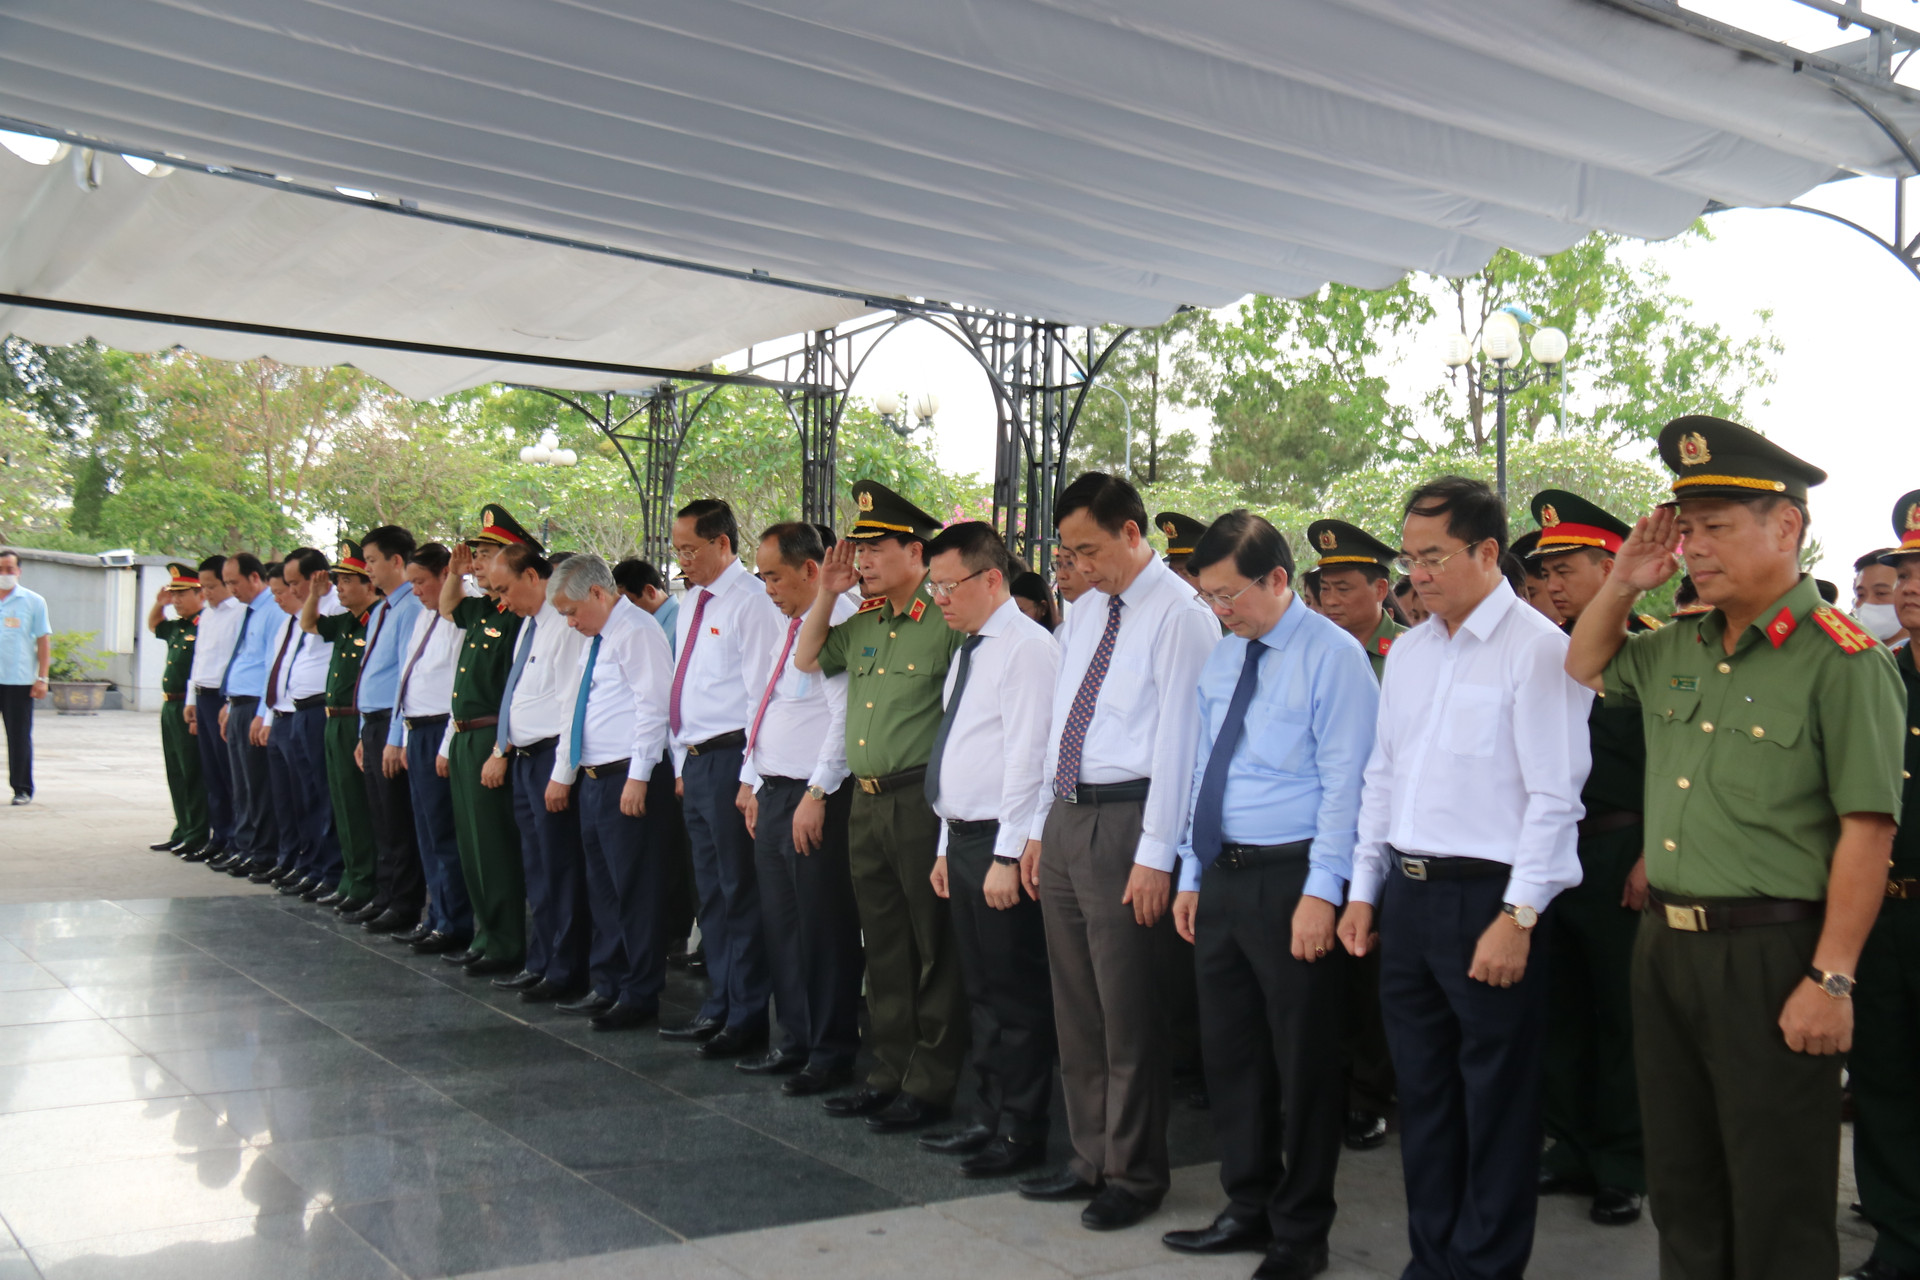 Đoàn thực hiện nghi thức phút mạc niệm trước anh linh các anh hùng liệt sĩ đã hi sinh cho sự nghiệp giải phóng dân tộc, thống nhất đất nước.